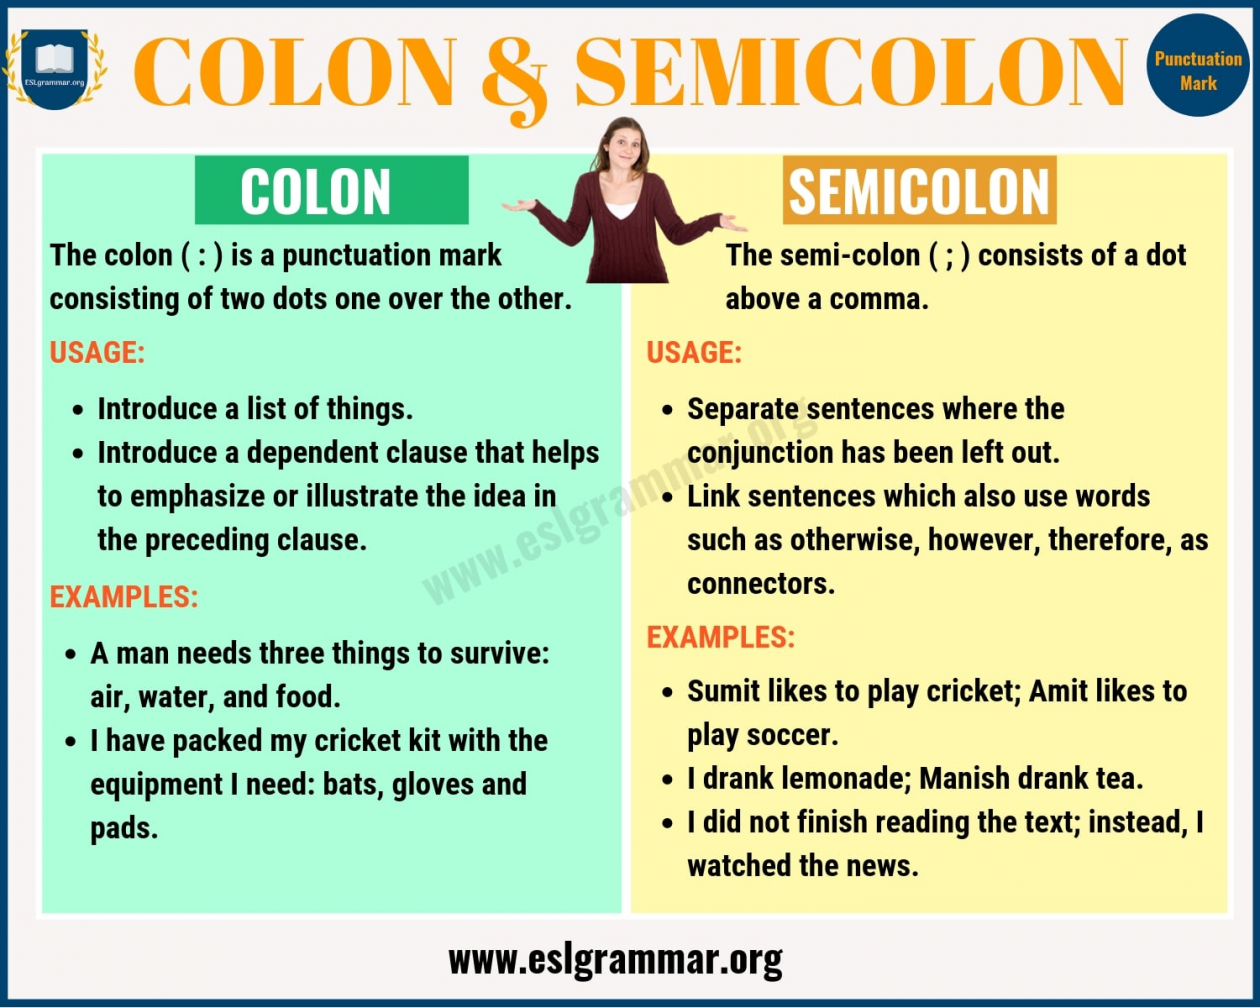 has vs semi colon on serial cloner